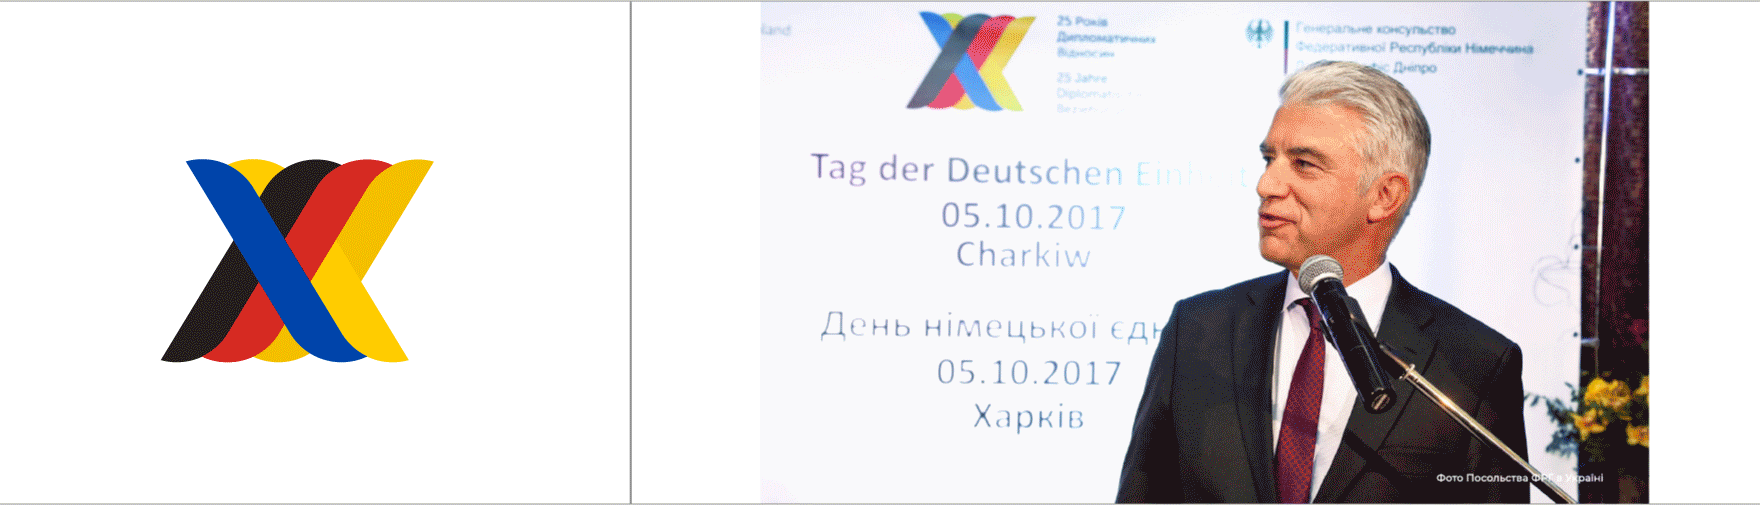 День Німецької єдності Харків 05.10.2017